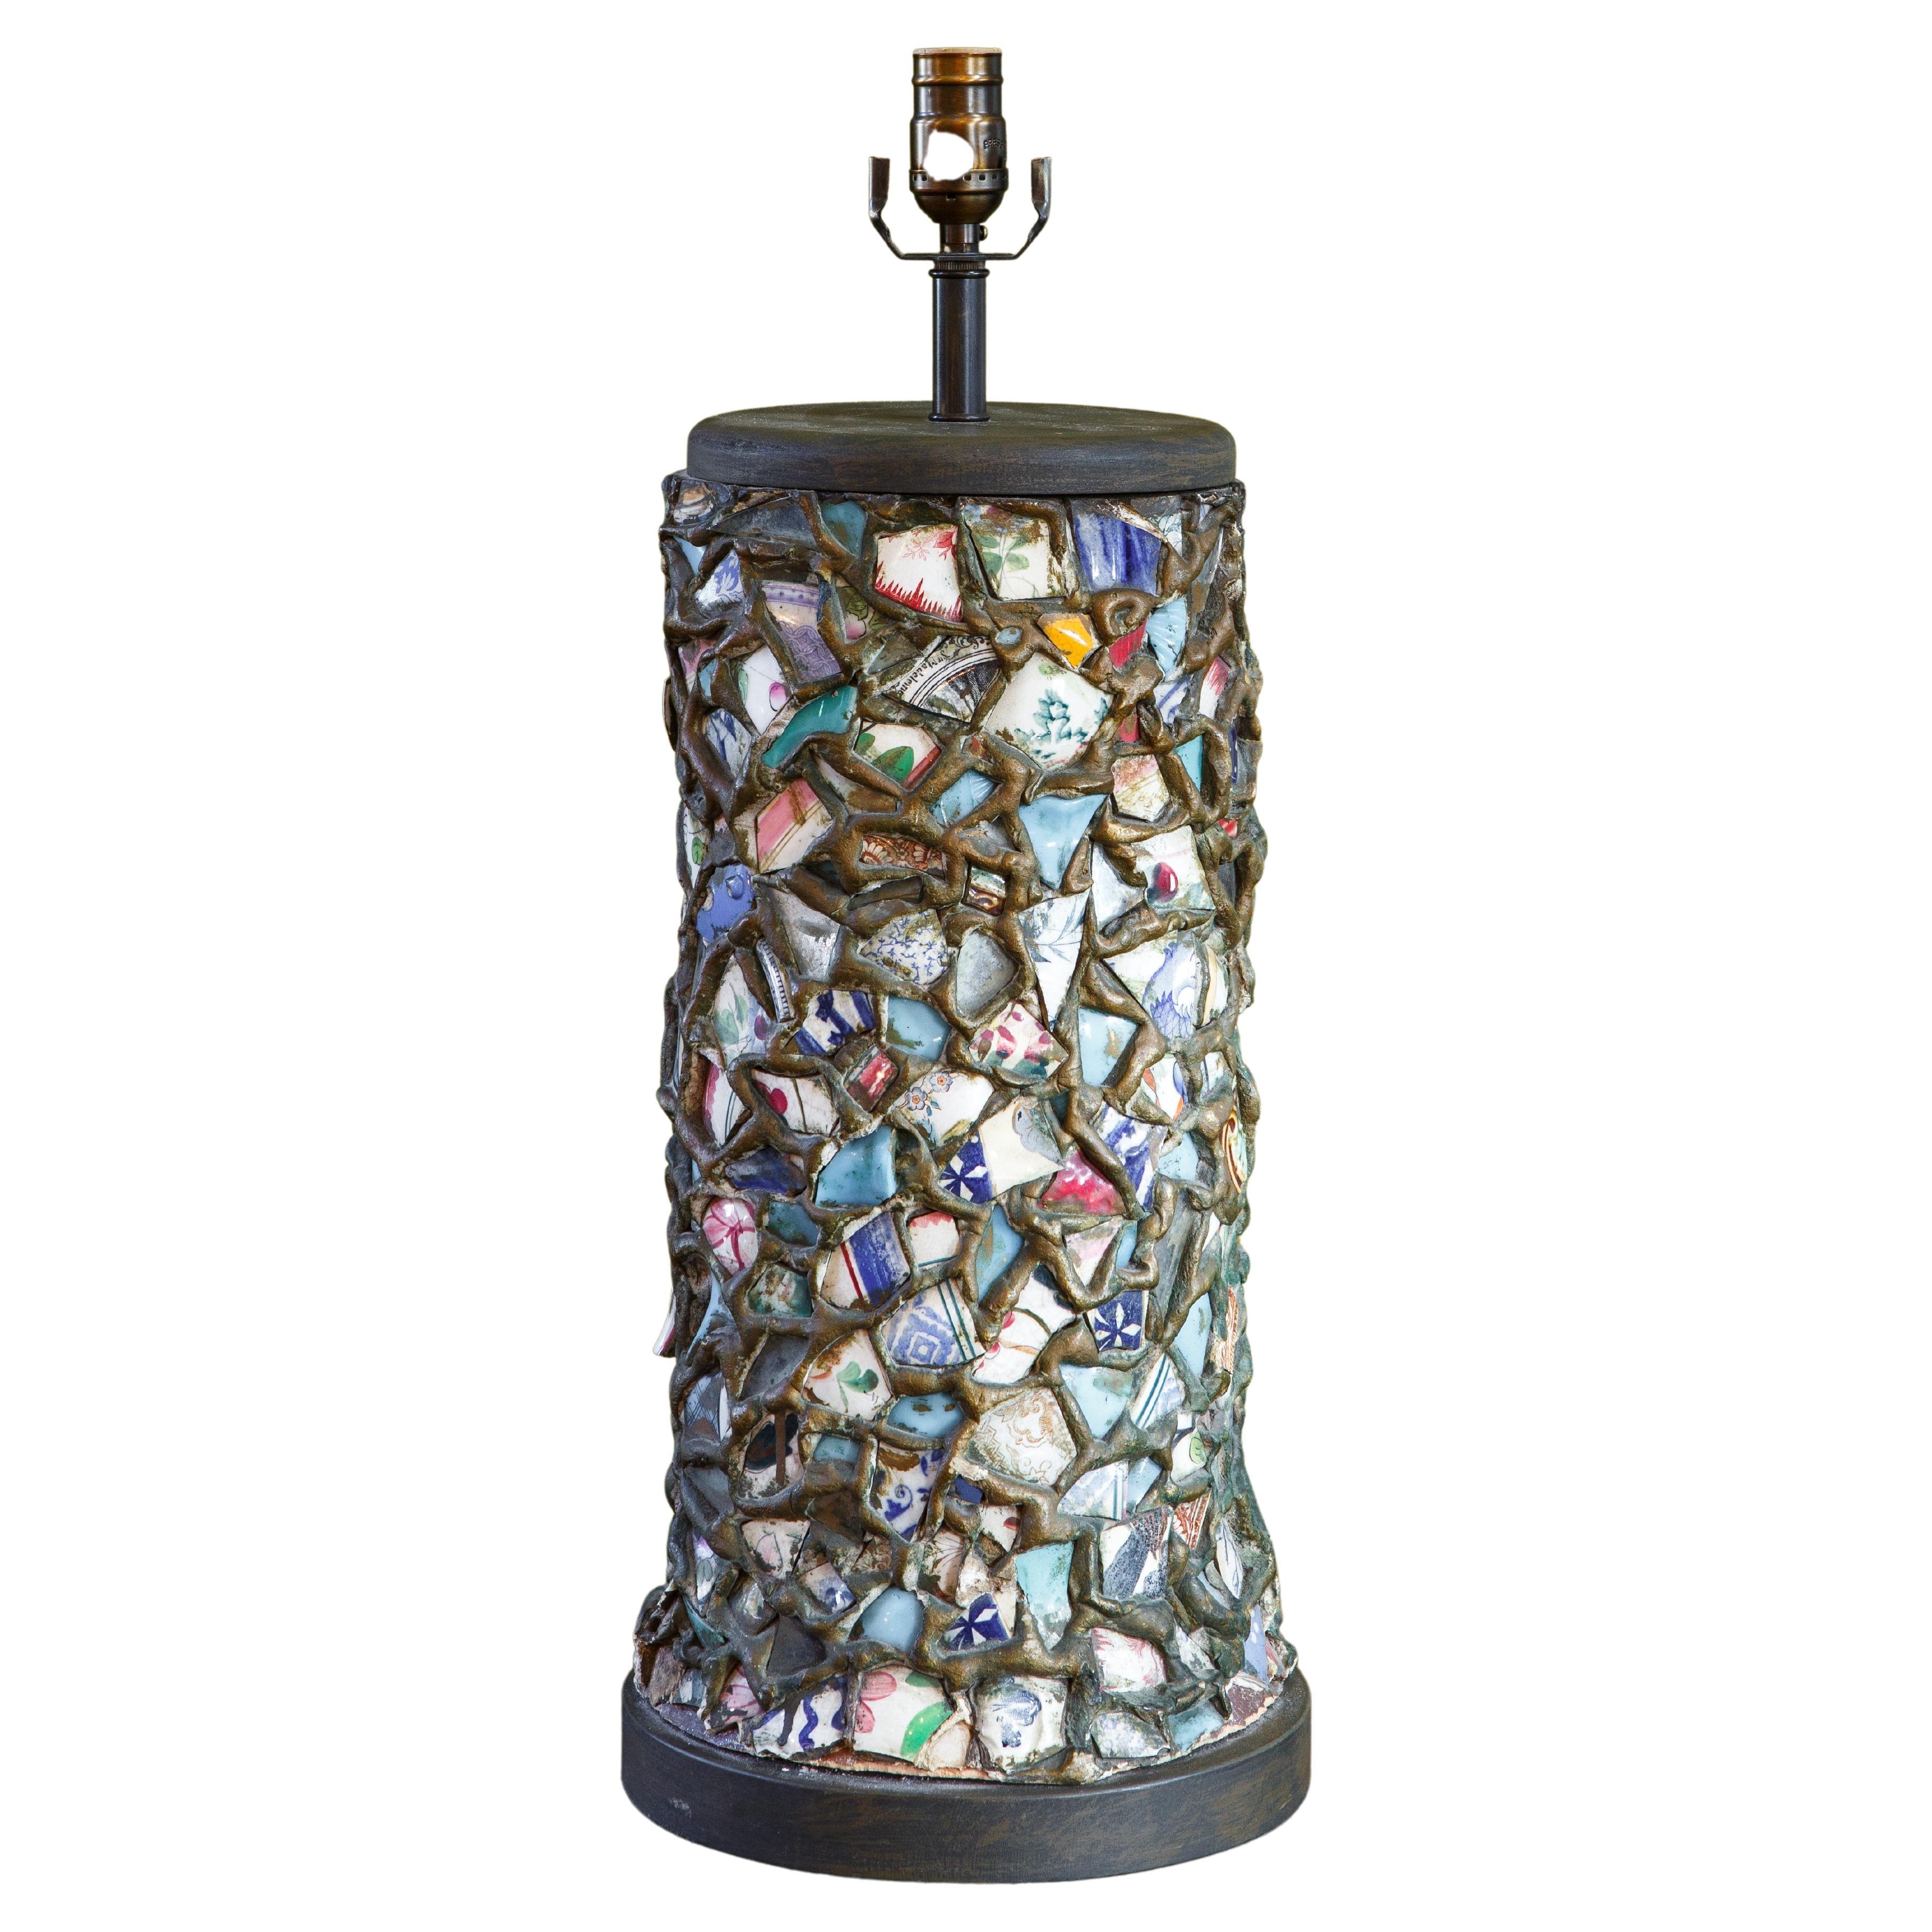 Mosaic Memory Ware Table Lamp